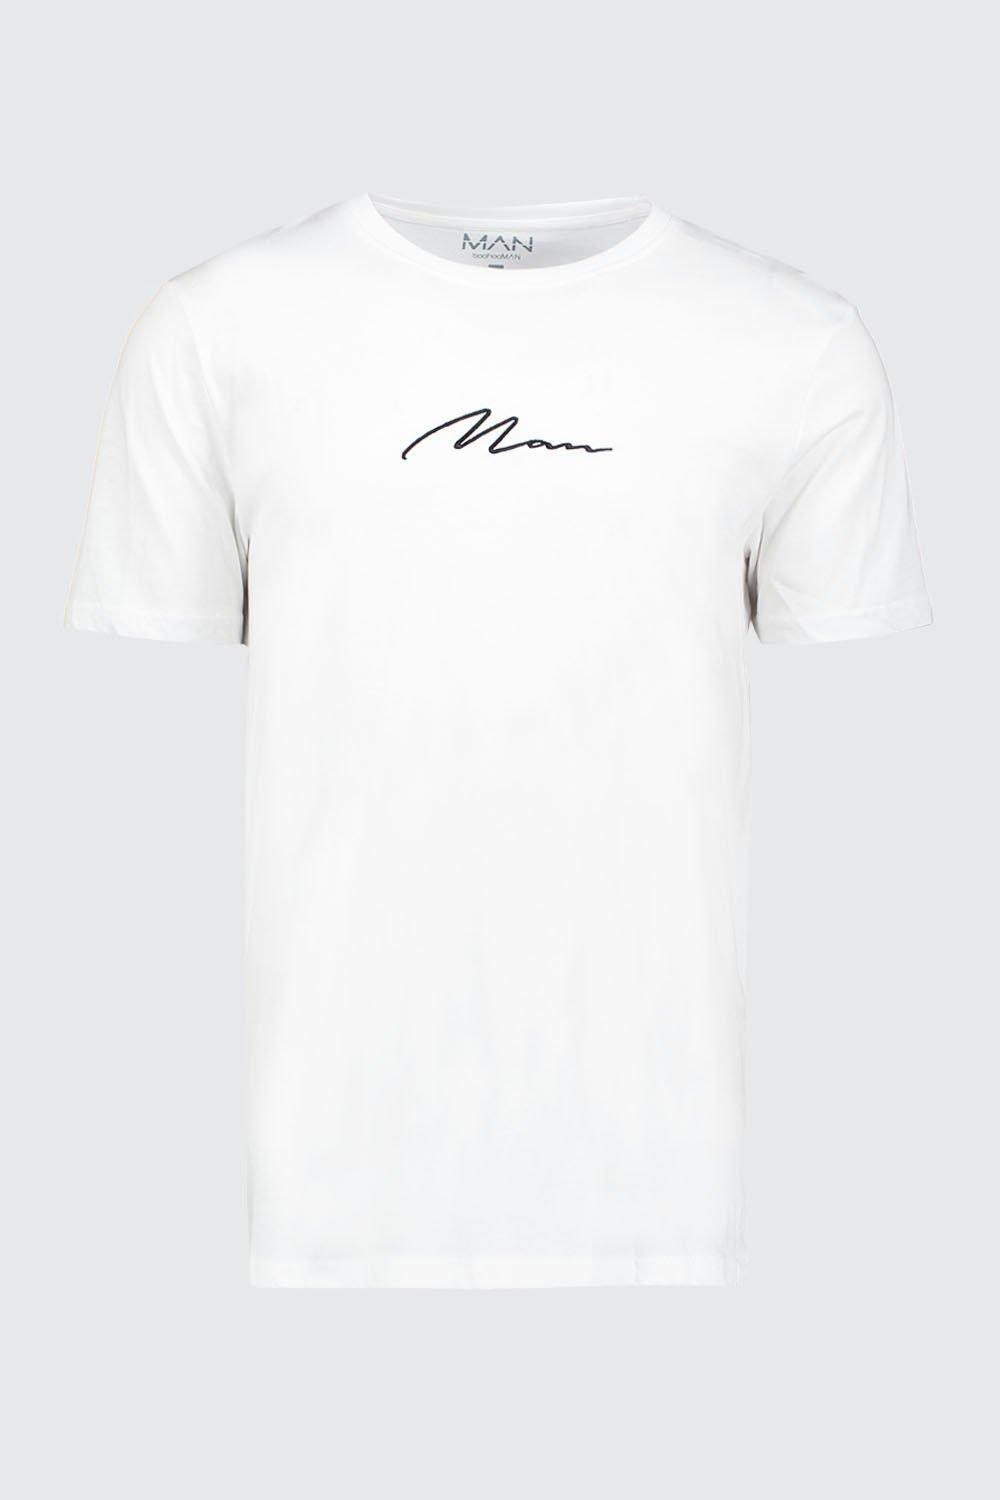 ブーフー boohoo Tシャツ ホワイト ブラック 白 黒 MAN Signature Embroidered T-Shirt 半袖 S/S  ショートスリーブ トップス メンズ 春 夏 おしゃれ ブランド イギリス asos[衣類] | s.s shop